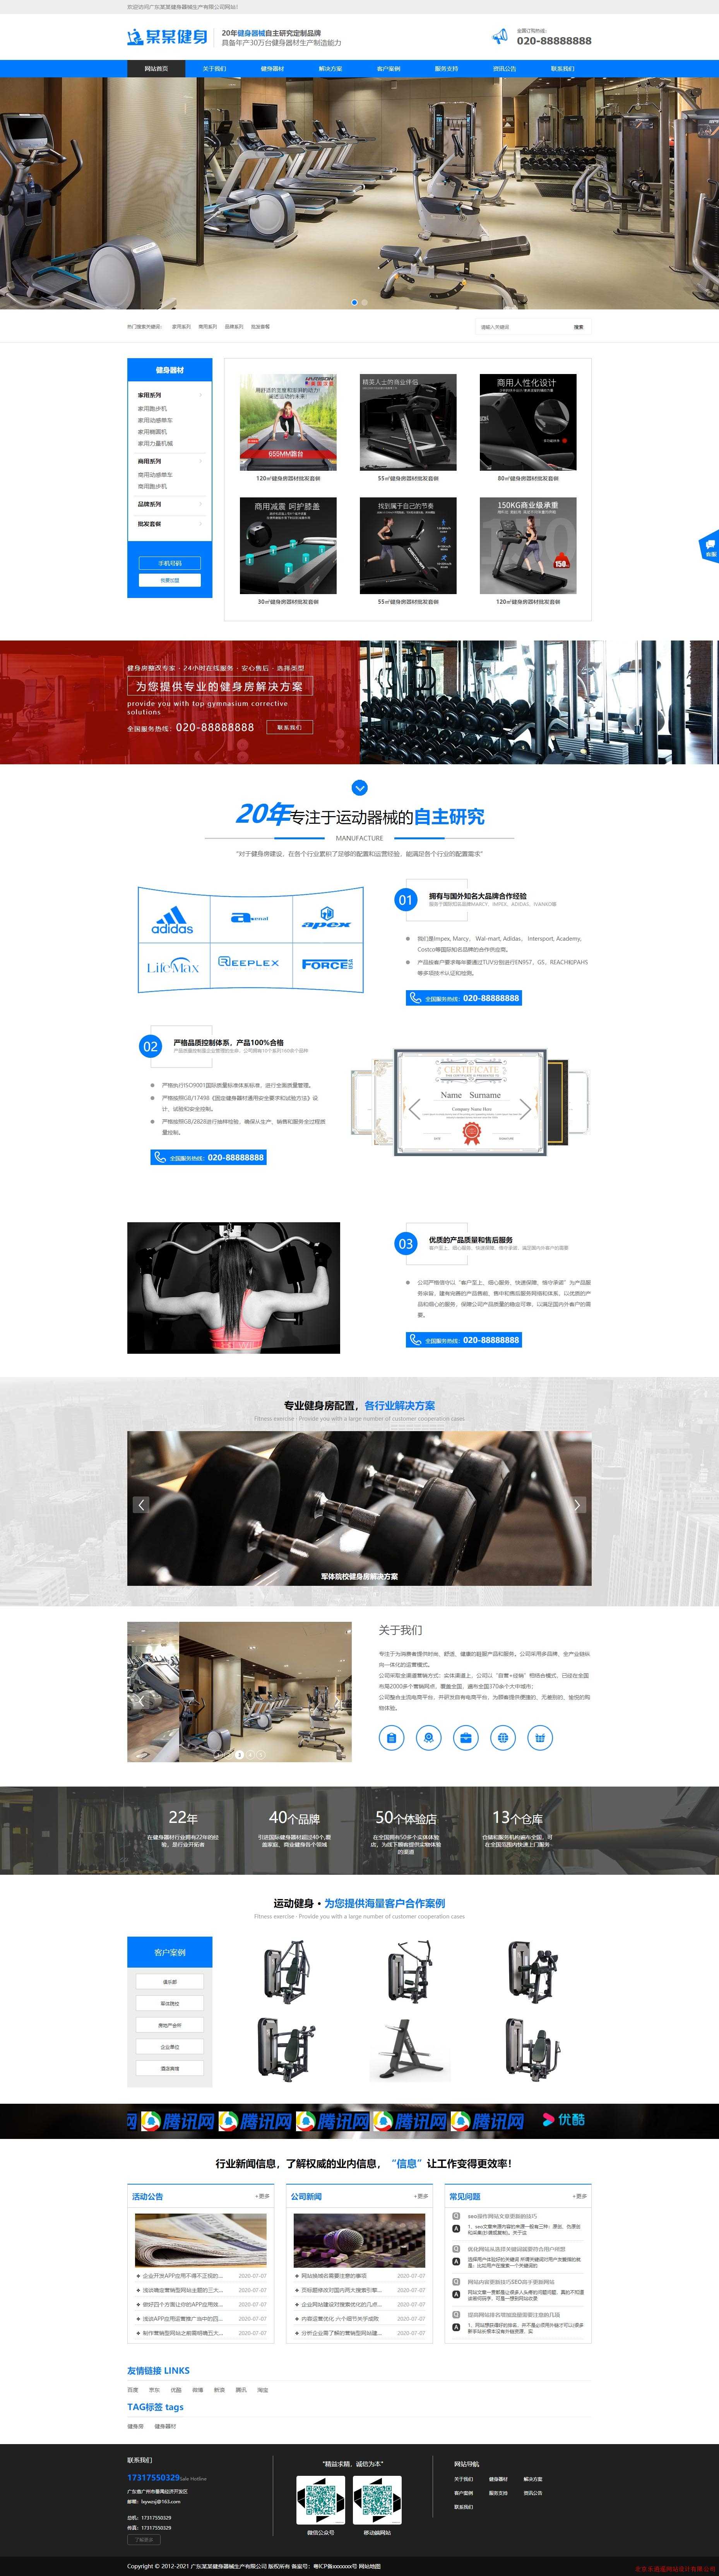 营销型运动健身器械-LXY1-04